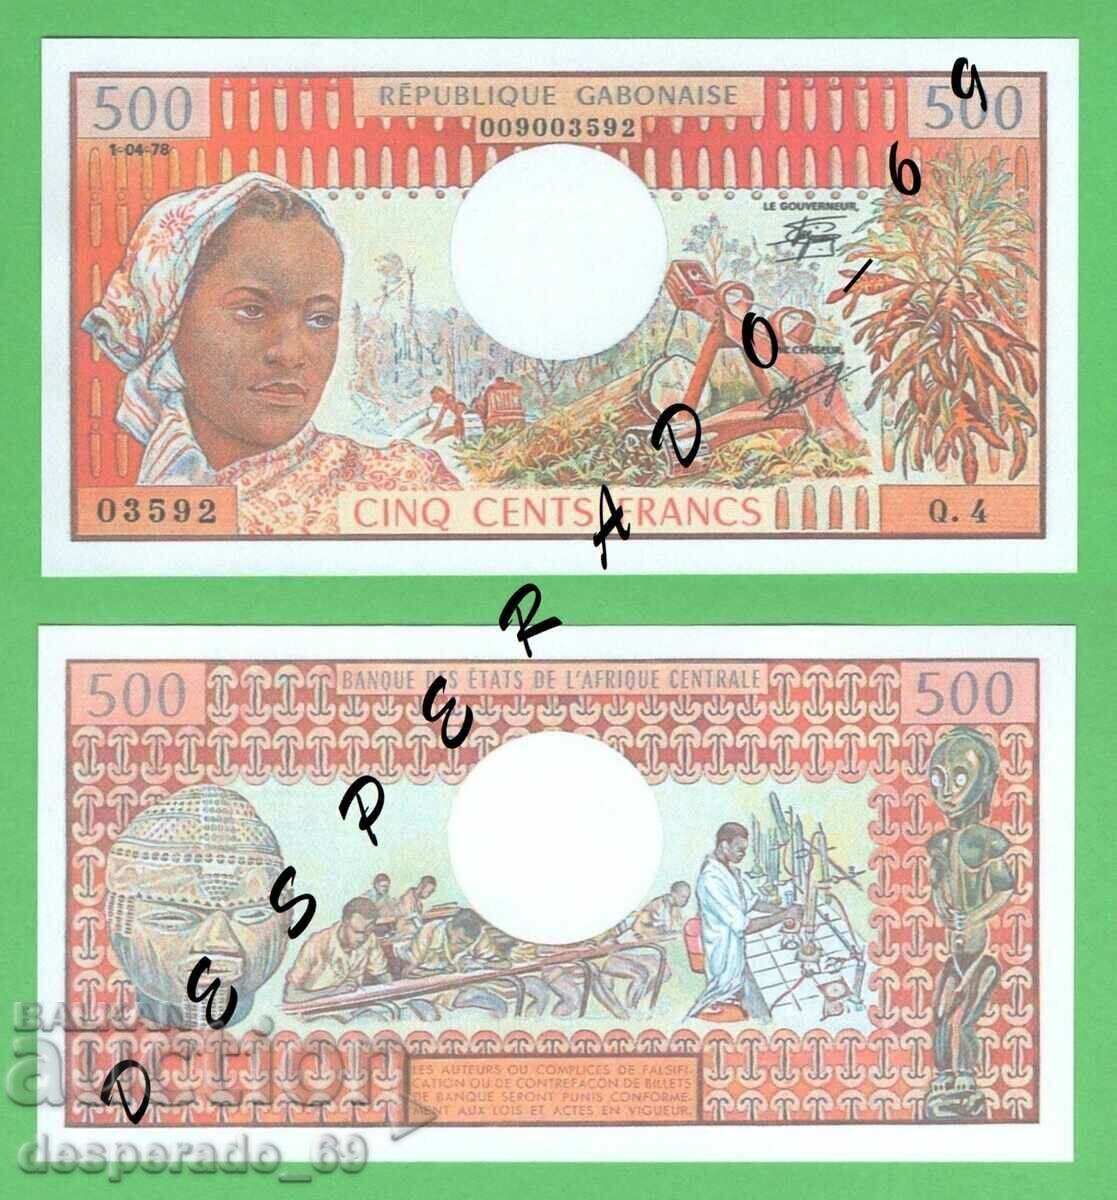 (¯`'•.¸(αναπαραγωγή) GABON 500 φράγκα 1978 UNC¸.•'´¯)